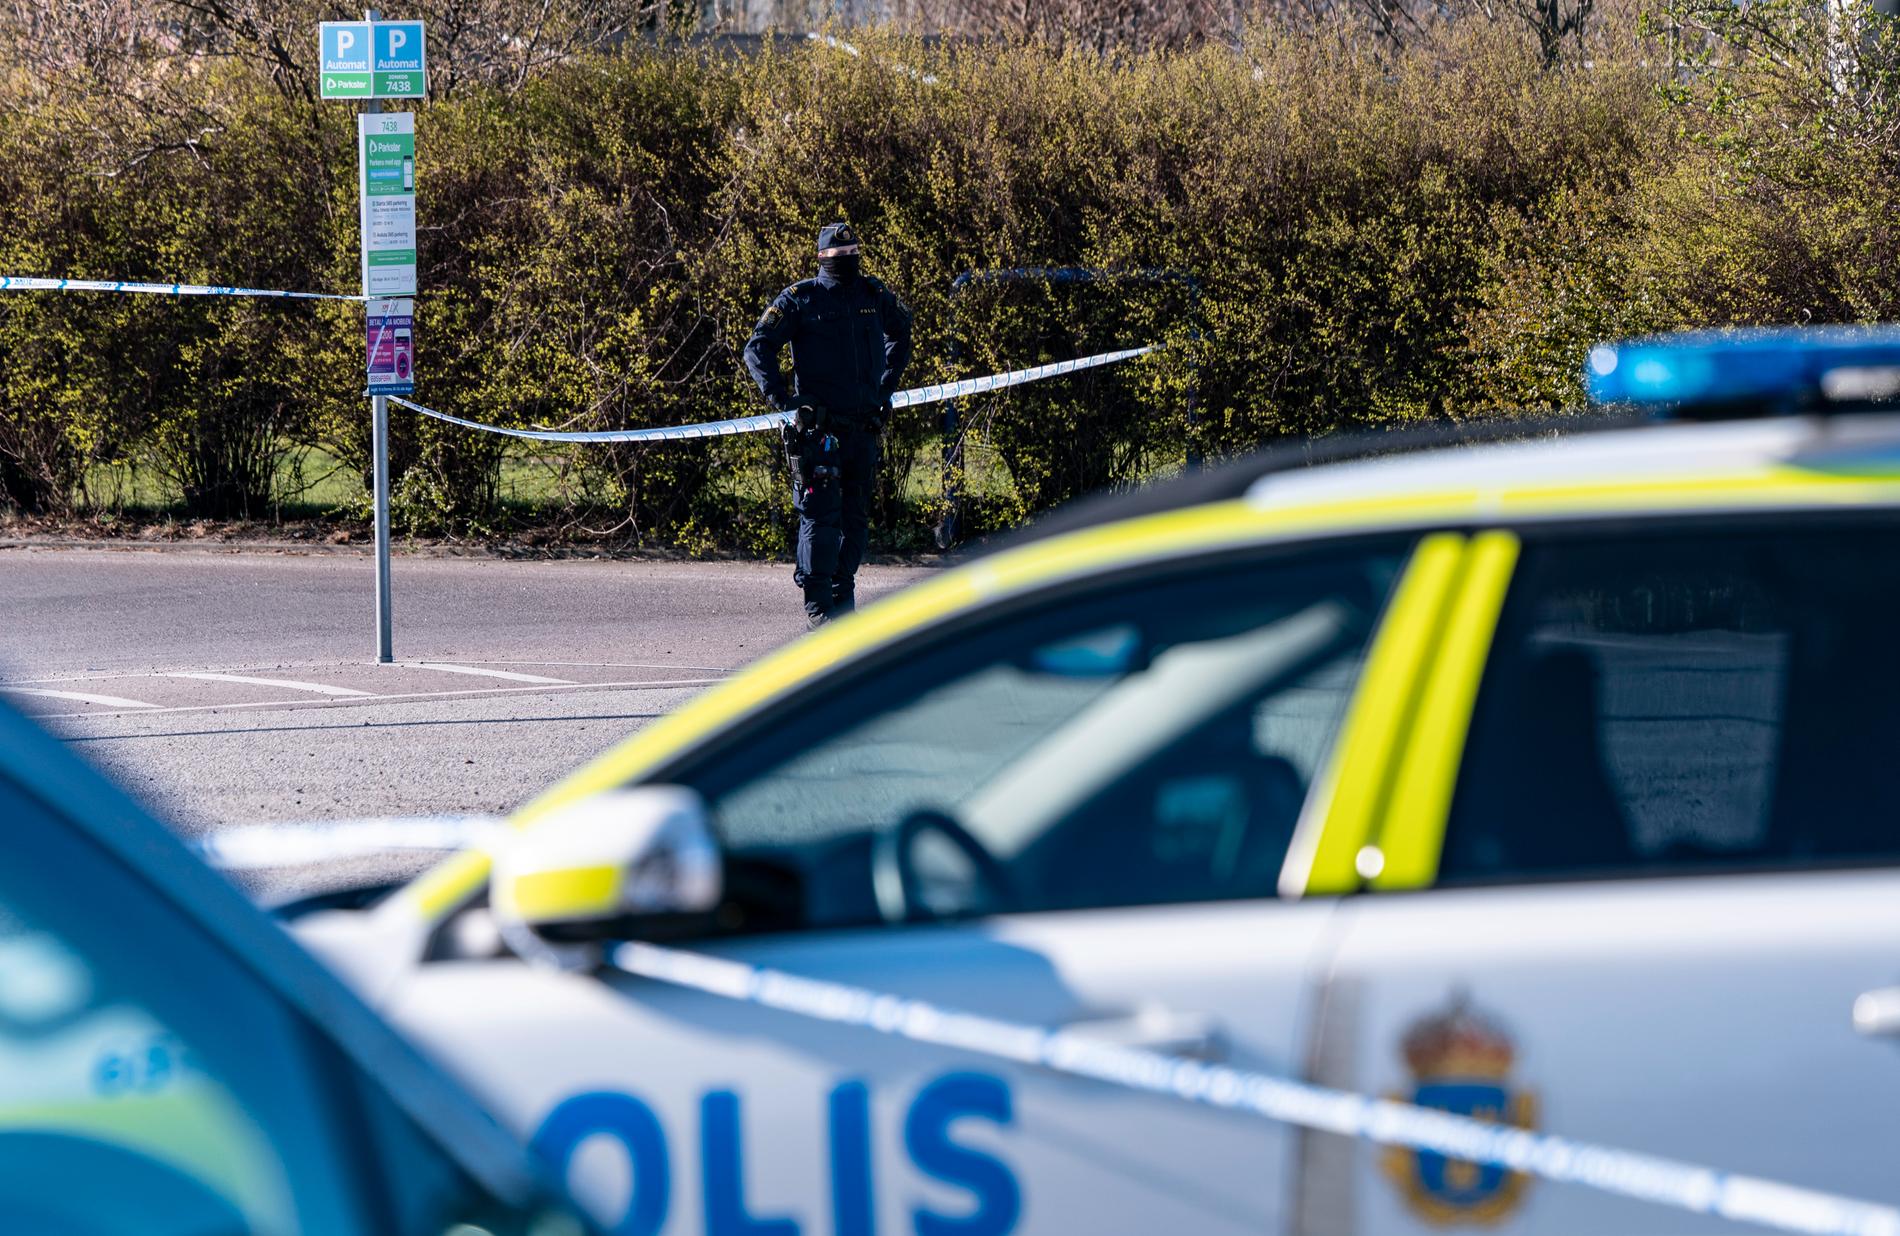 Polis och avspärrningar kring Ärtholmens koloniområde i Malmö efter att en person hittats död i slutet av april. Arkivbild.